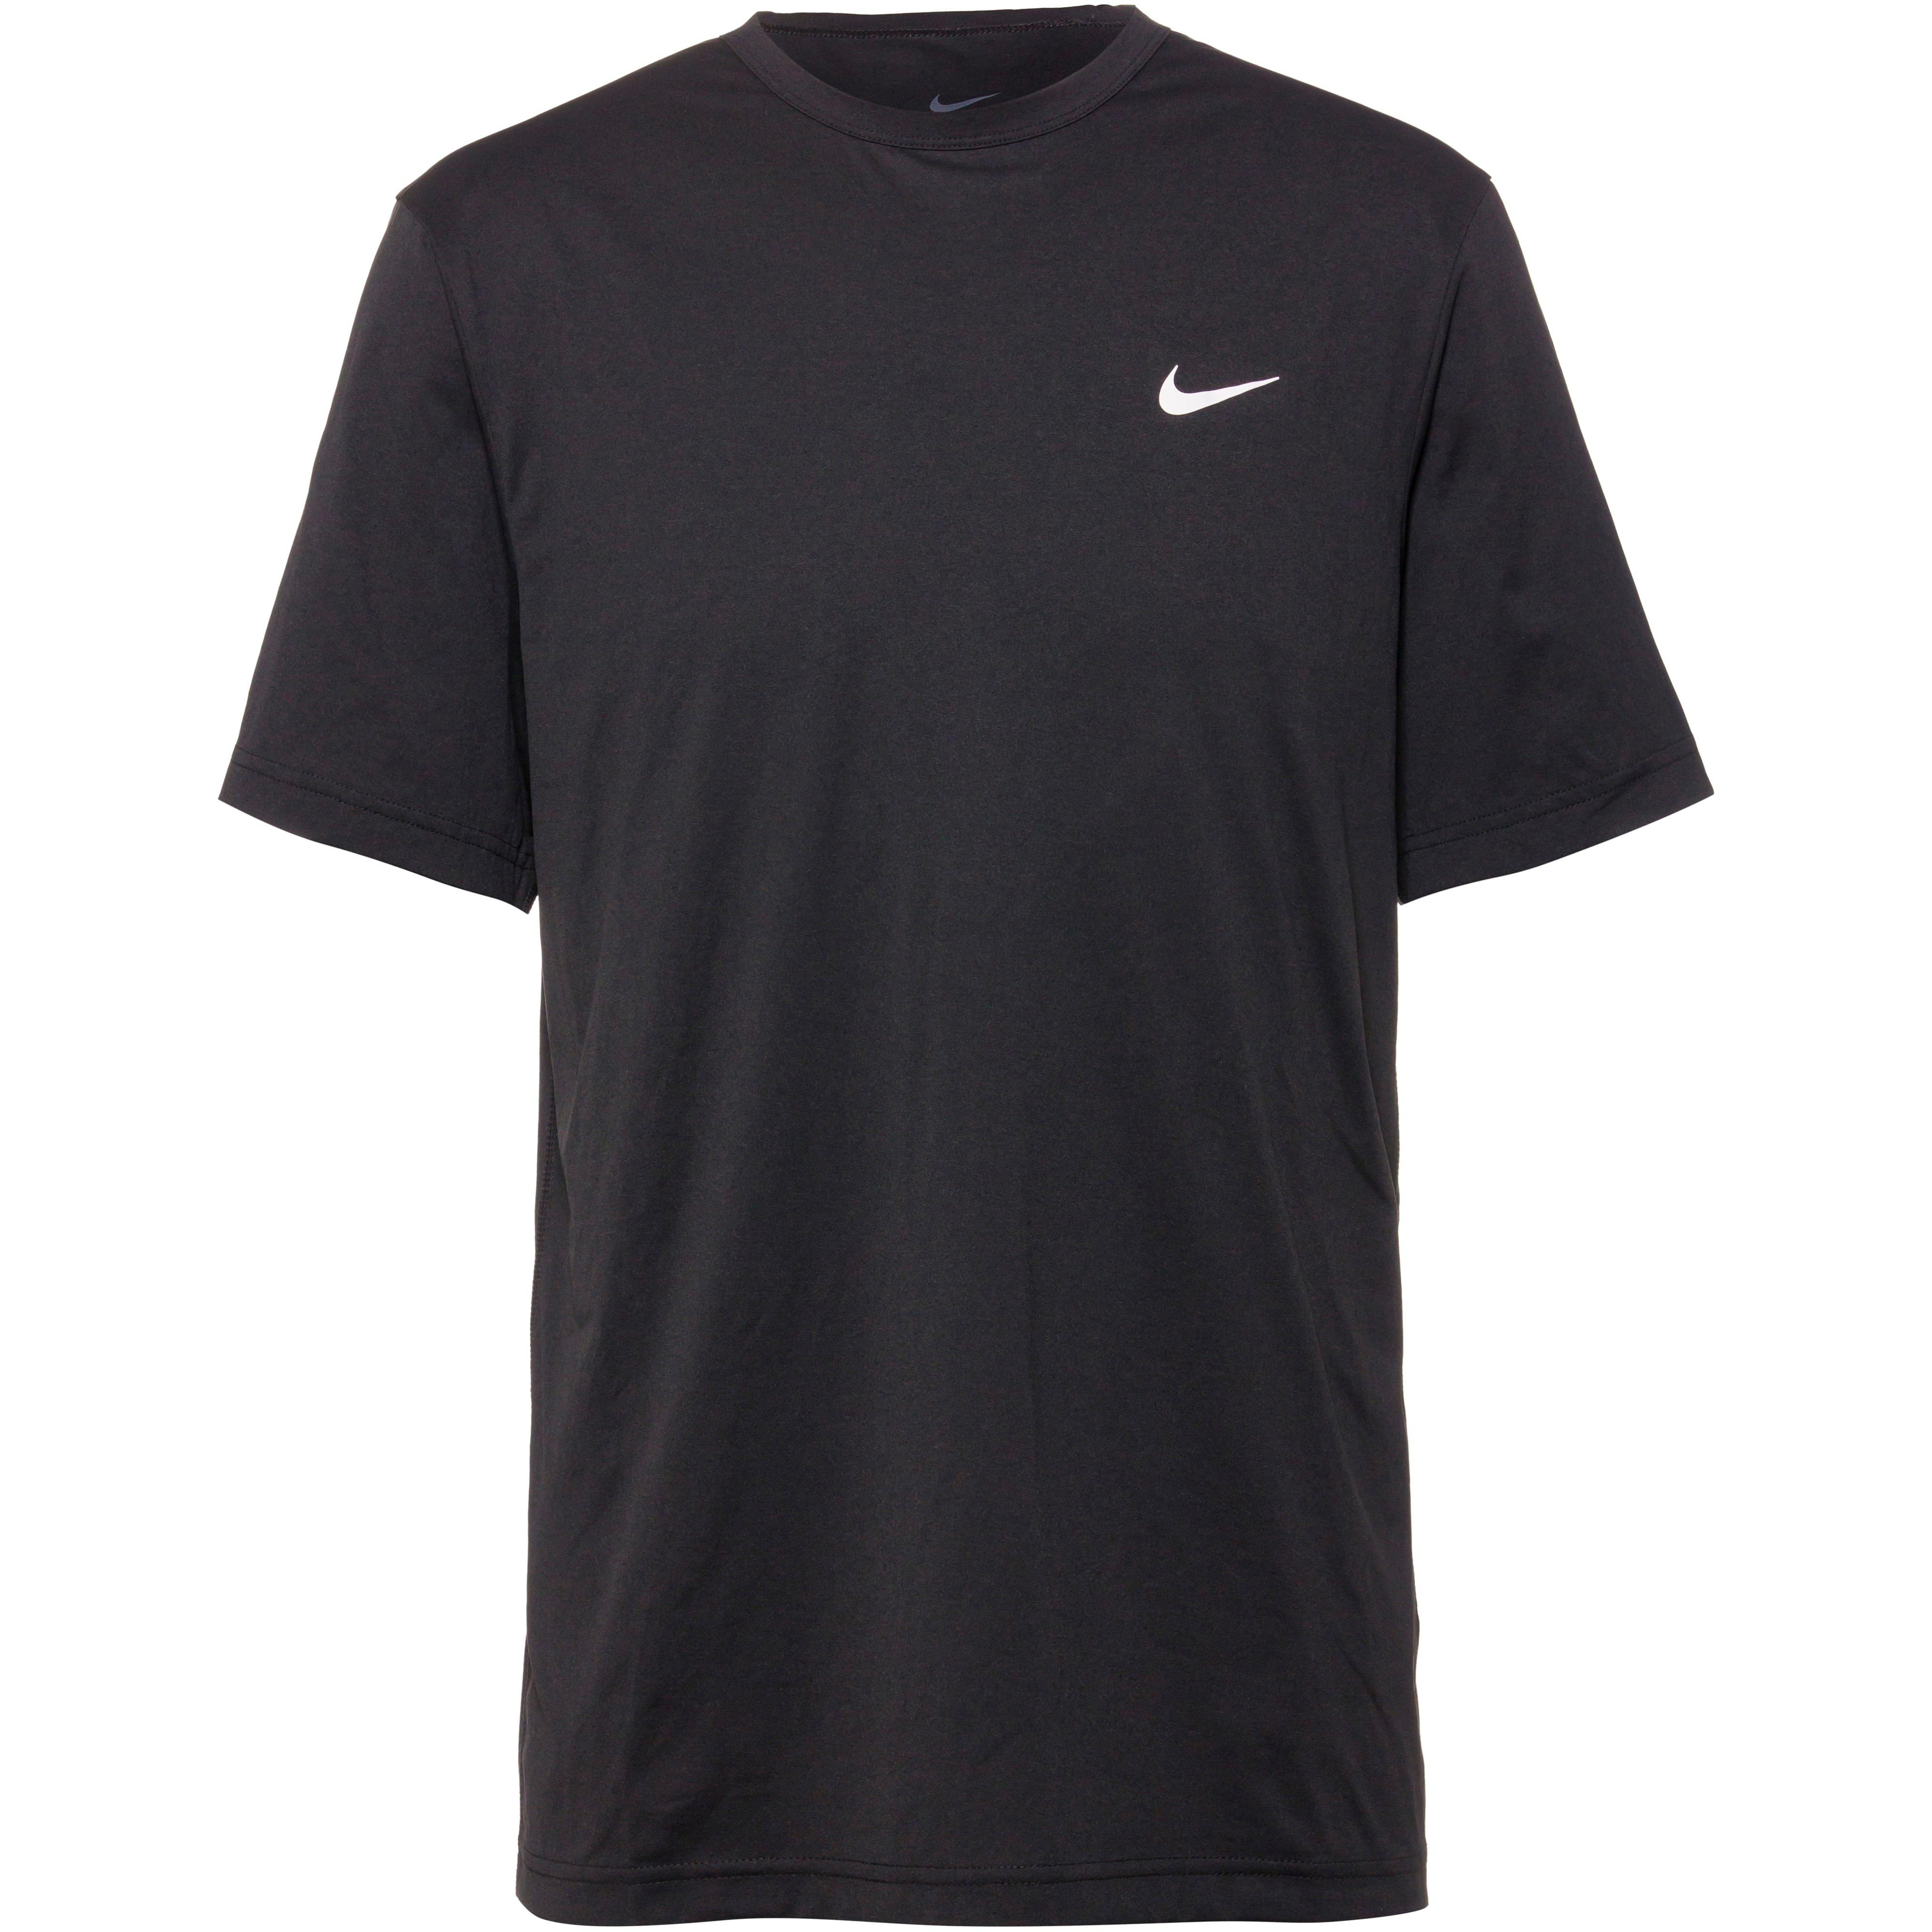 Shirts online SportScheck bestellen Nike bequem bei